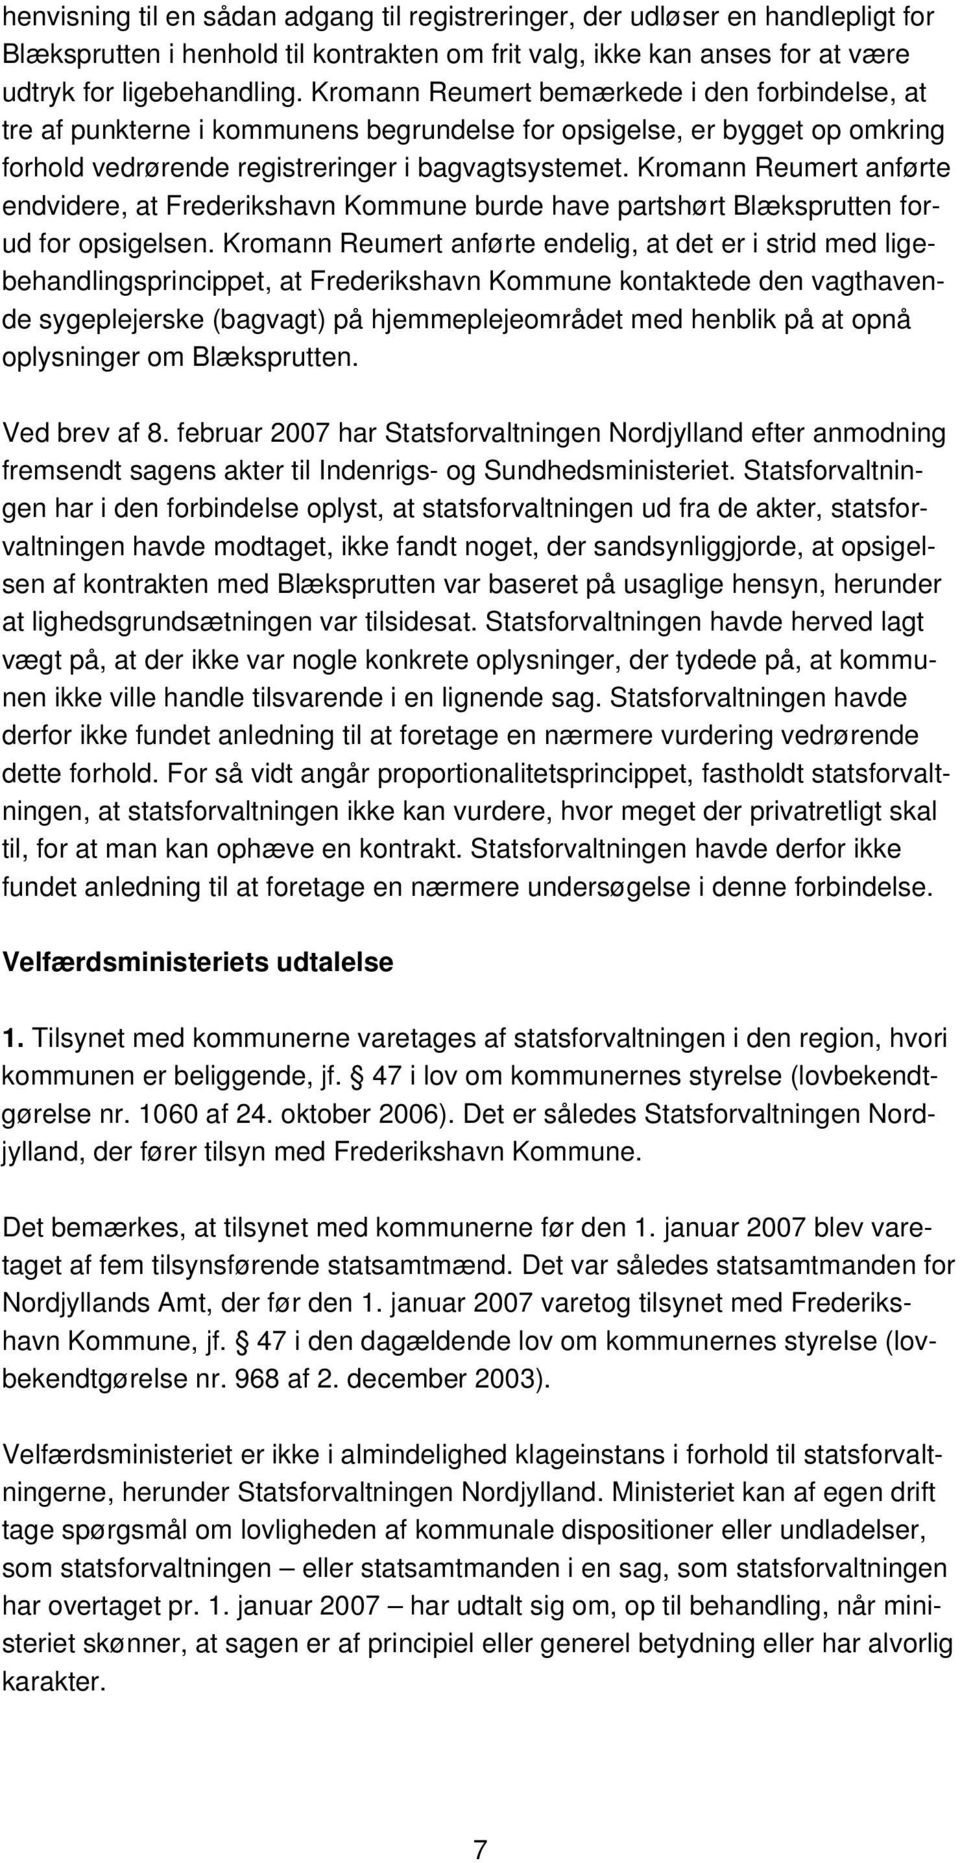 Kromann Reumert anførte endvidere, at Frederikshavn Kommune burde have partshørt Blæksprutten forud for opsigelsen.